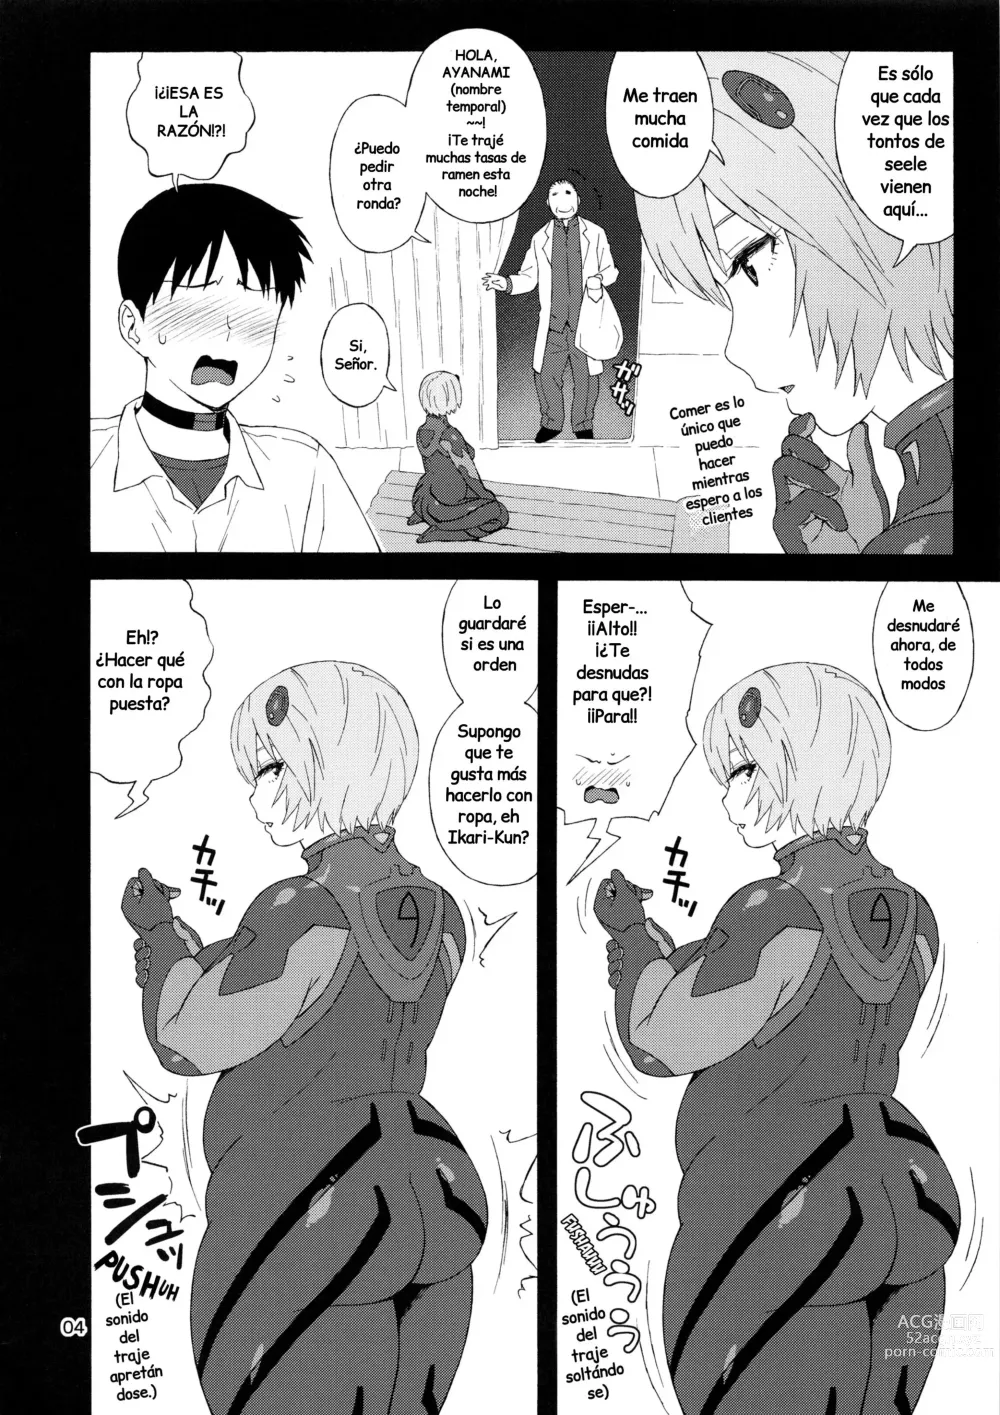 Page 4 of doujinshi Mi Ayanami (nombre temporal) no puede ser tan gorda